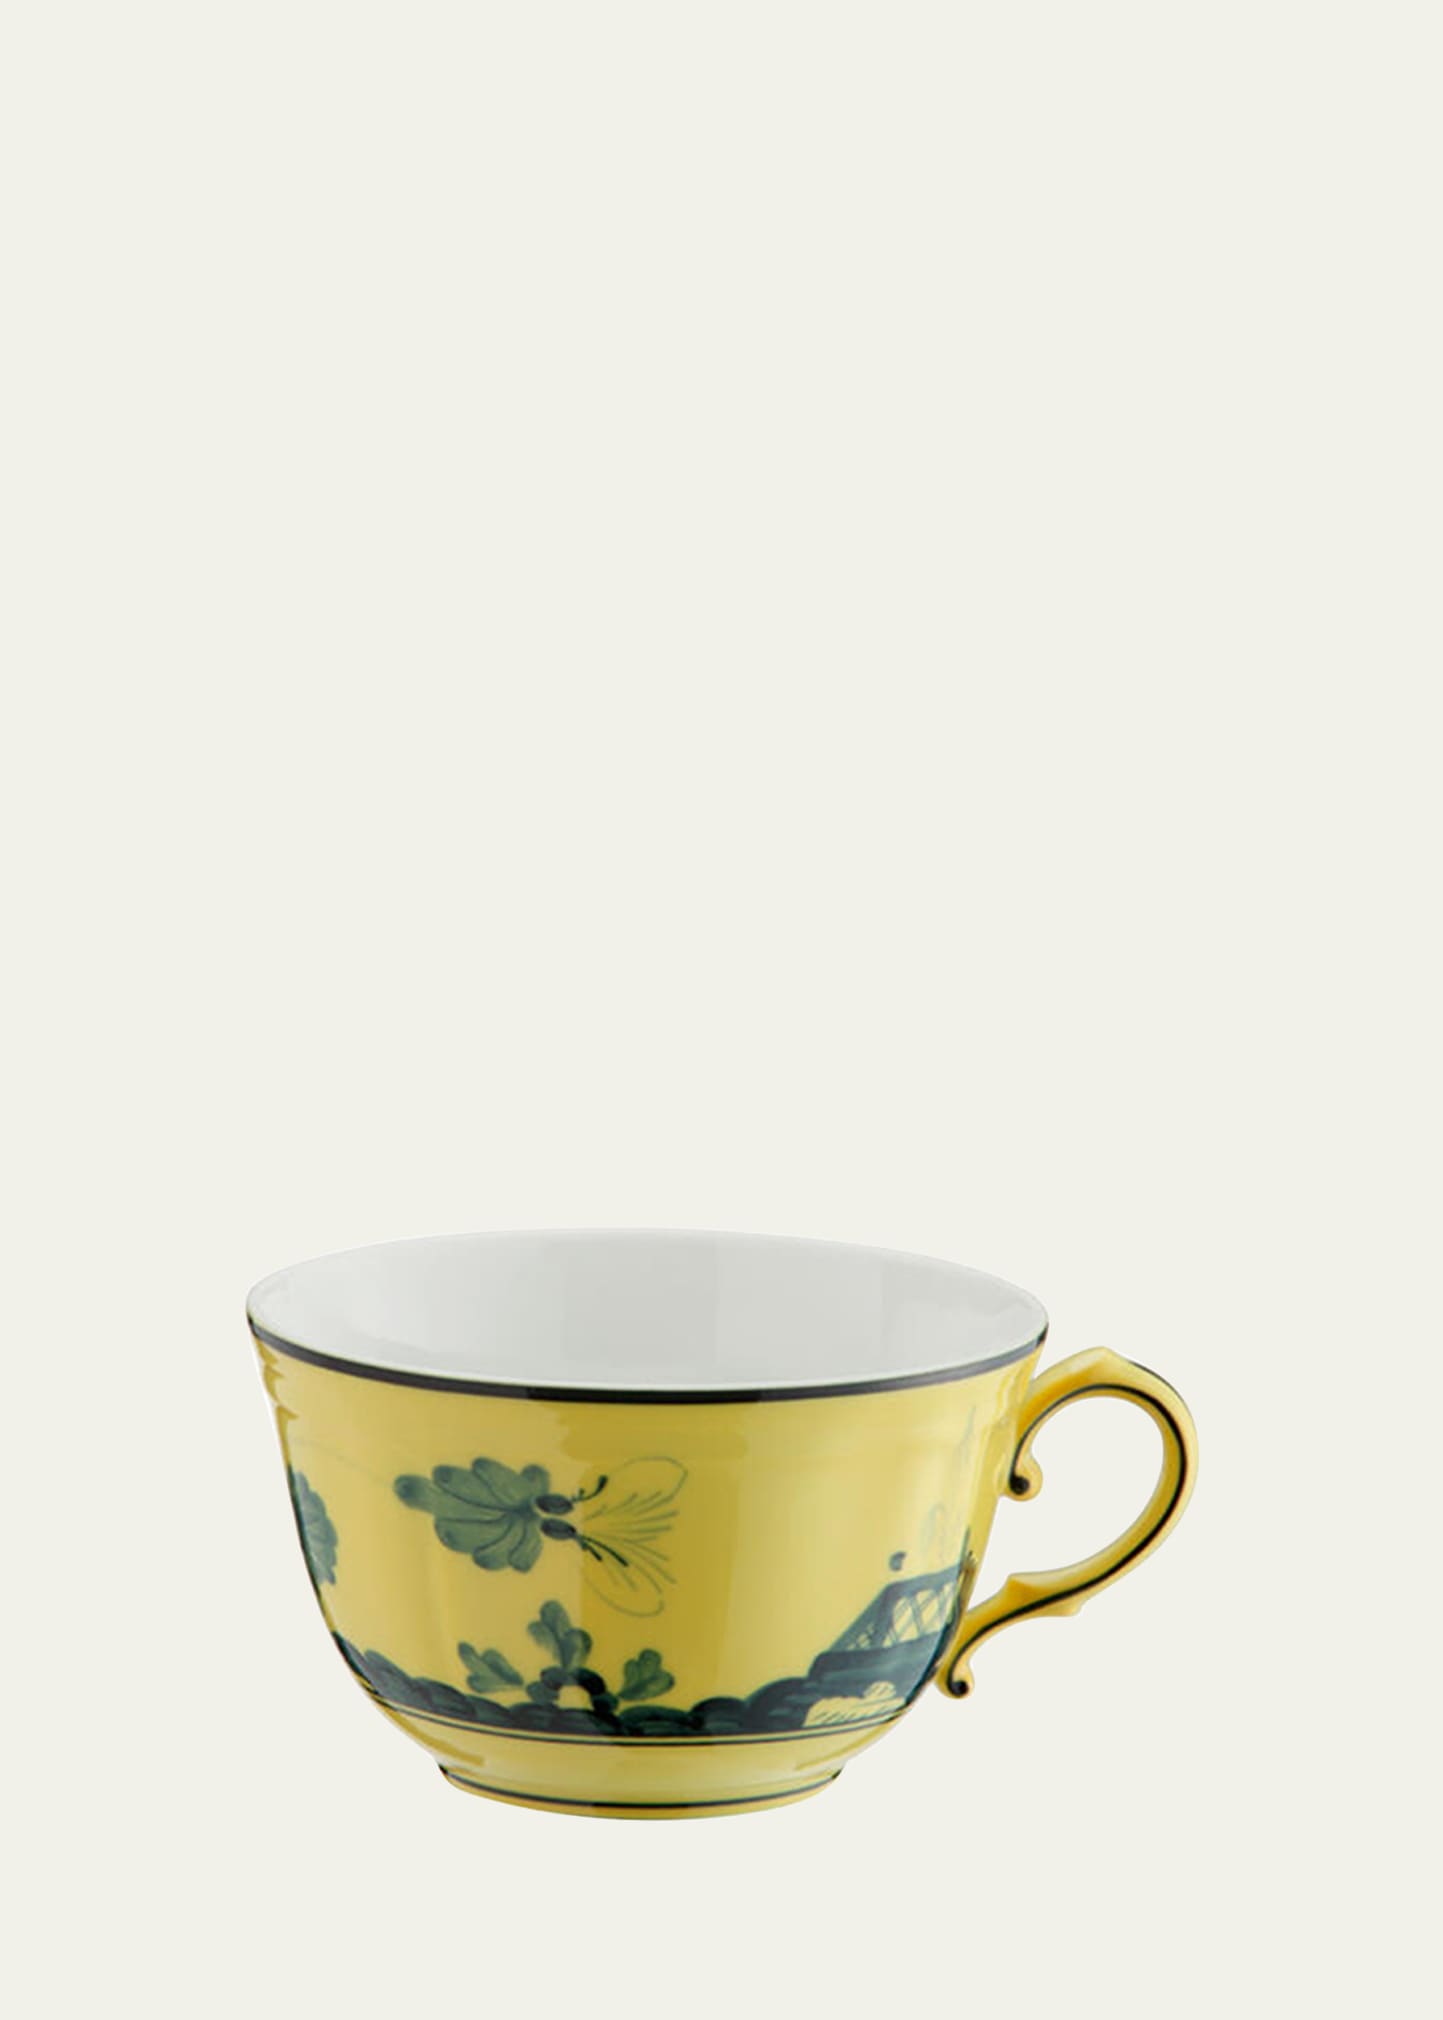 Ginori 1735 Citrino Tea Cup In Yellow